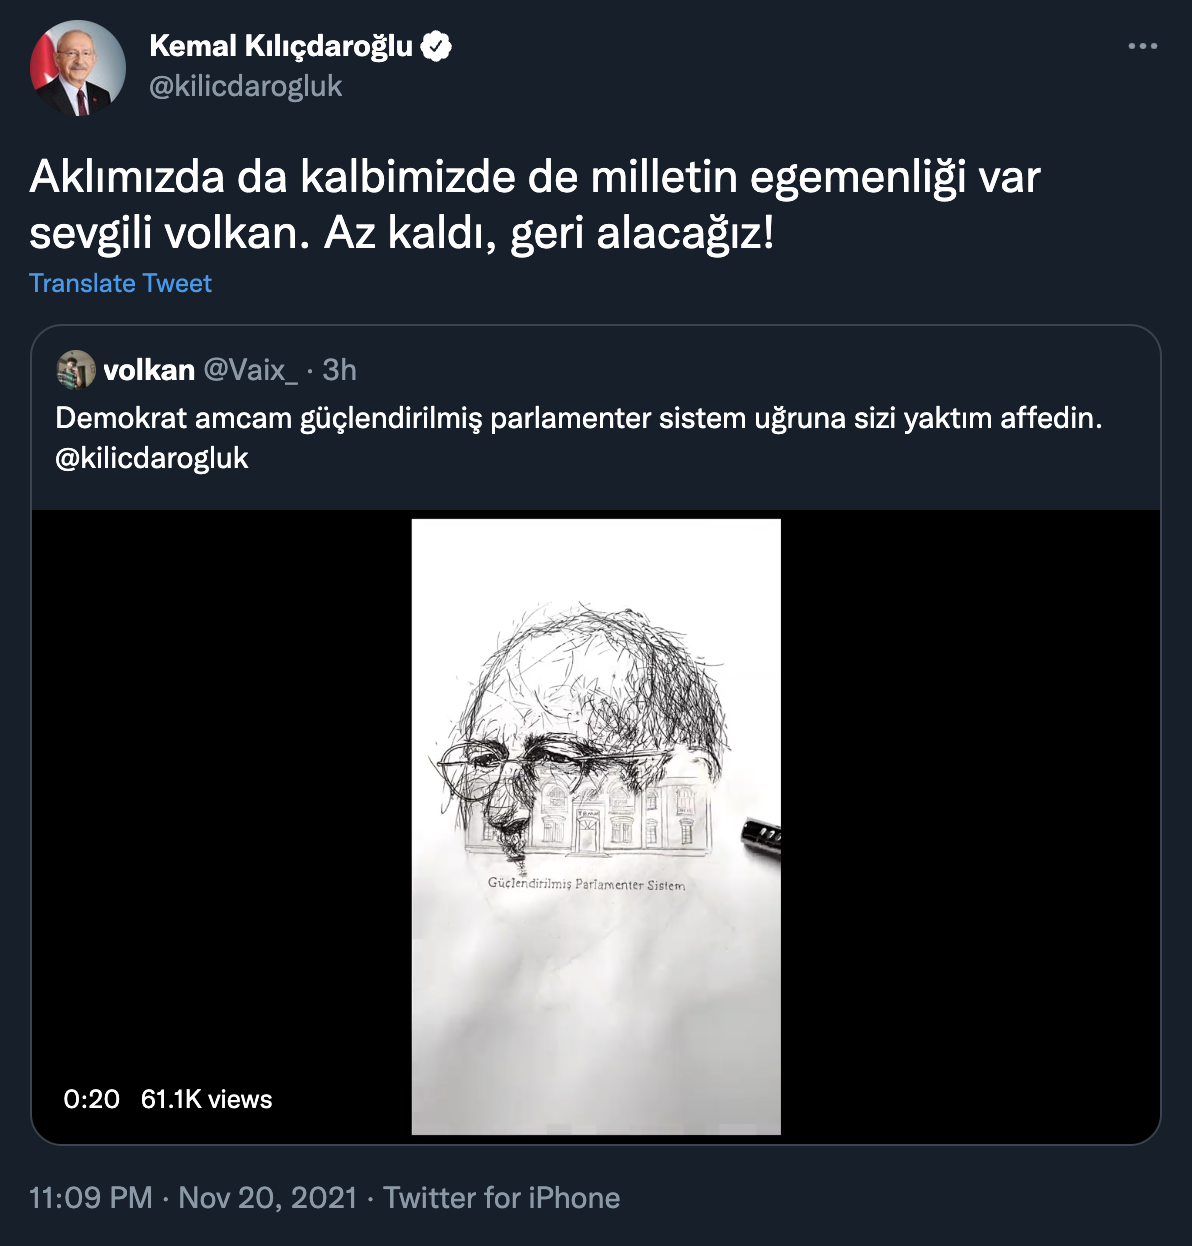 Kılıçdaroğlu'ndan "Güçlendirilmiş parlamenter sistem uğruna sizi yaktım affedin" diyen takipçisine karşılık